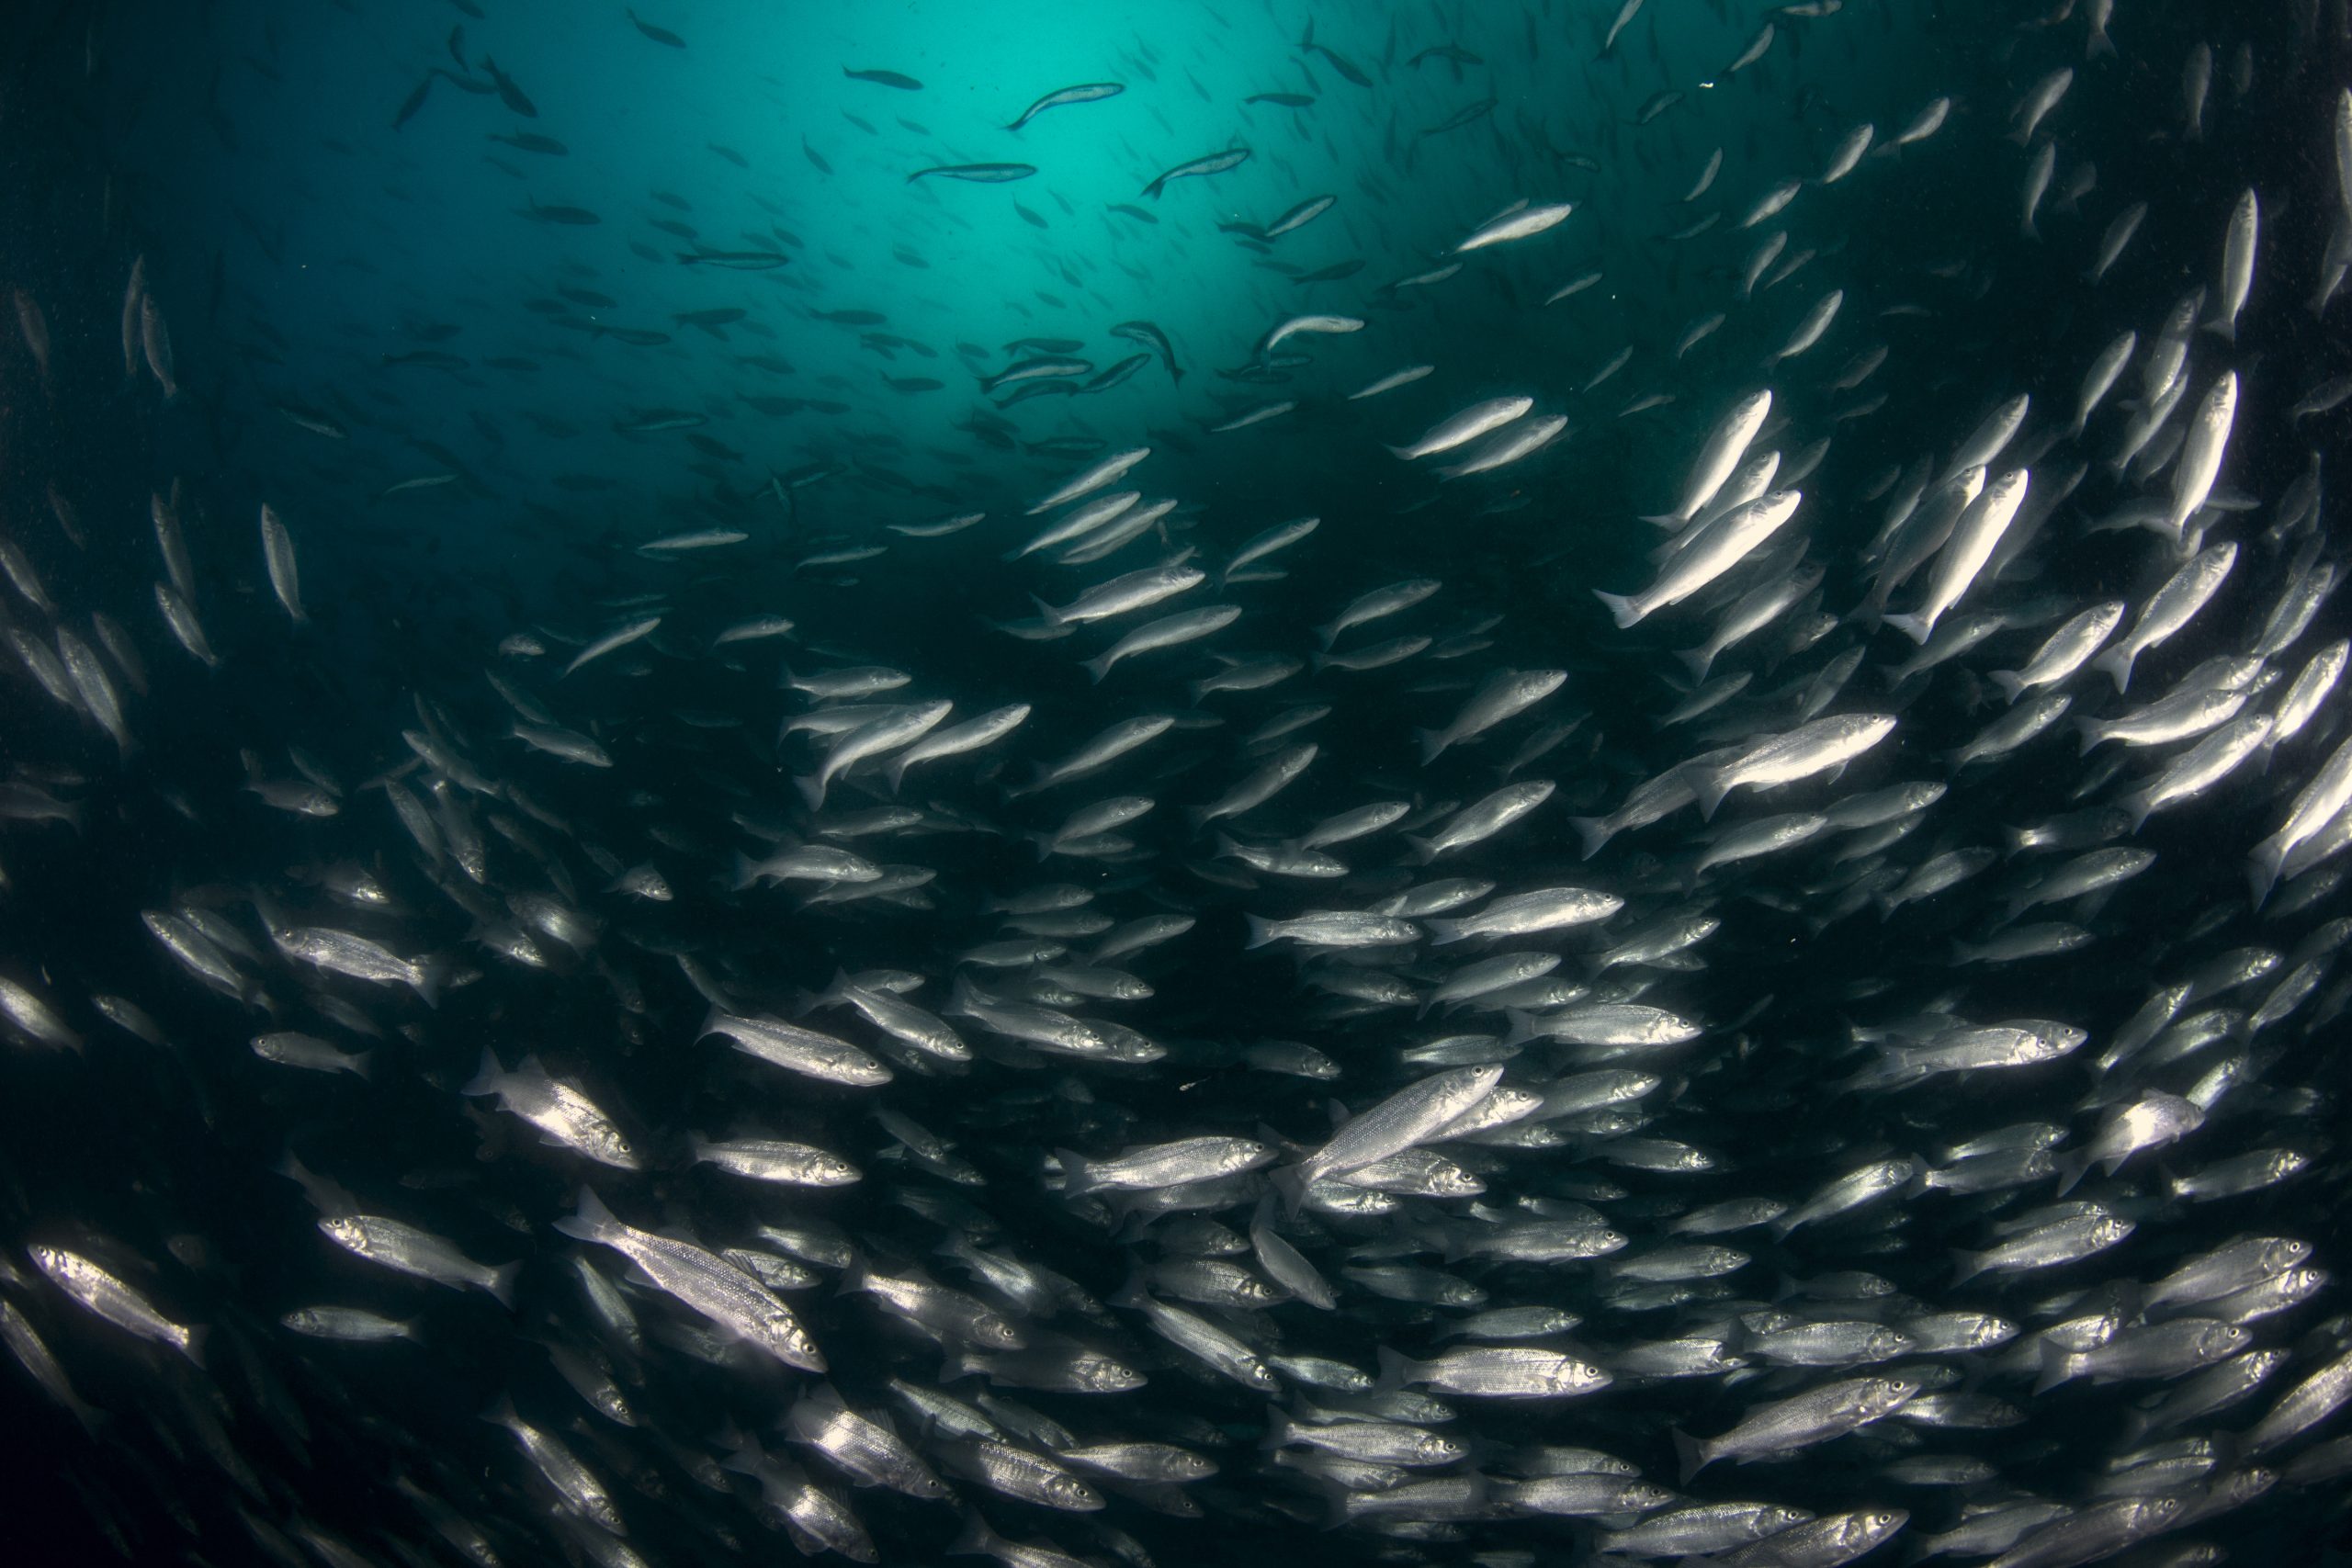 Lysolecithins help sea bass grow better. Photo: Shutterstock